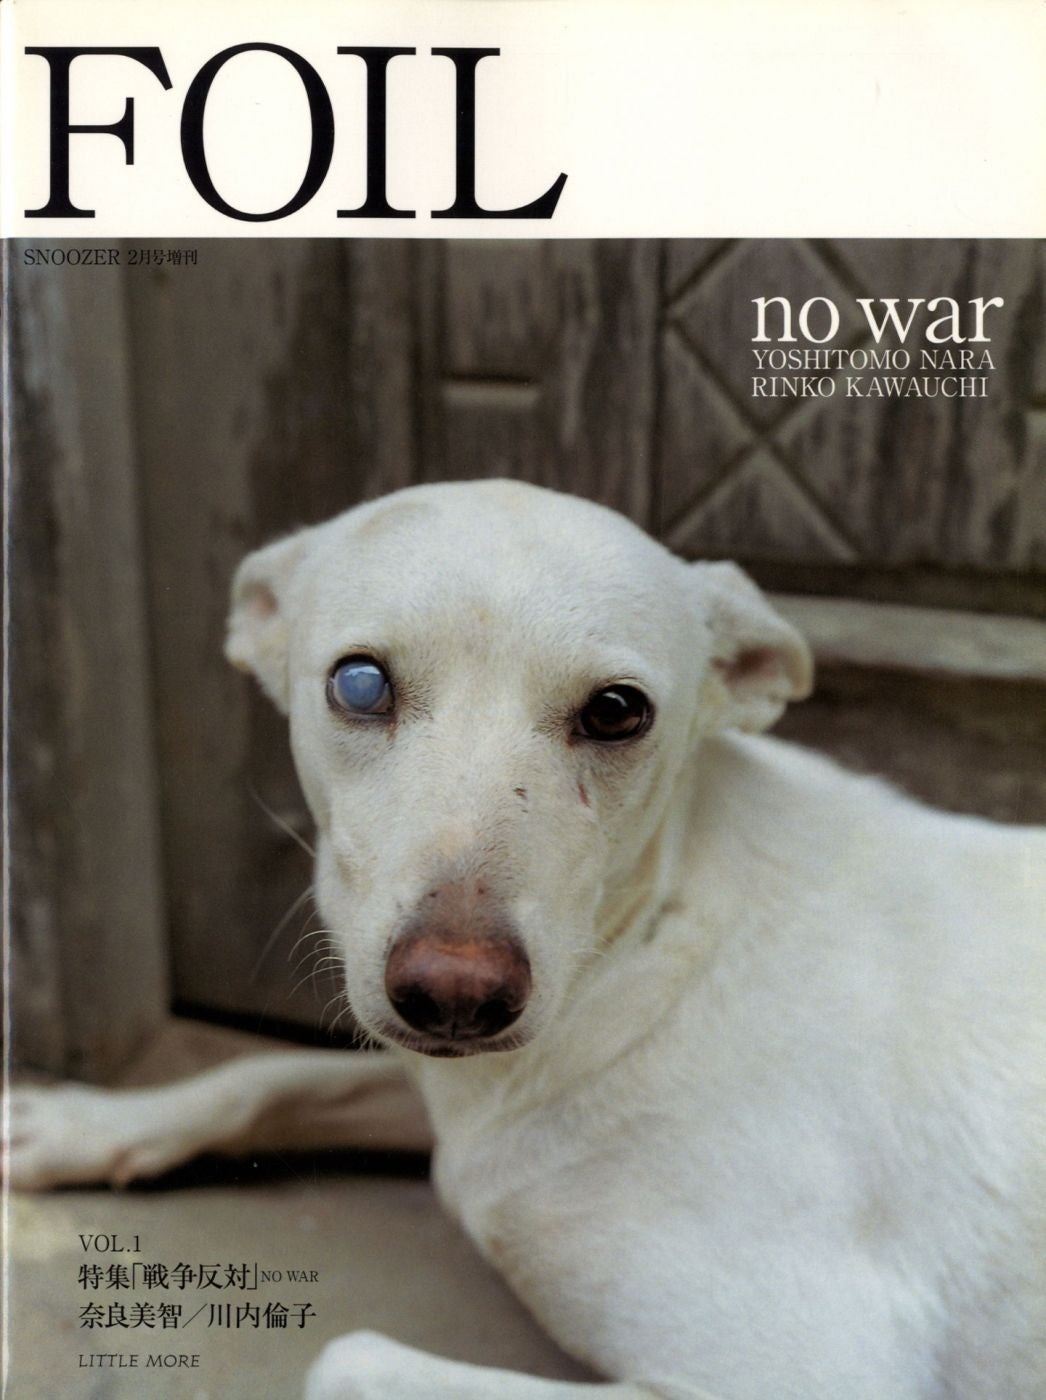 Foil: Vol. 1 (Snoozer 2) - "No War"